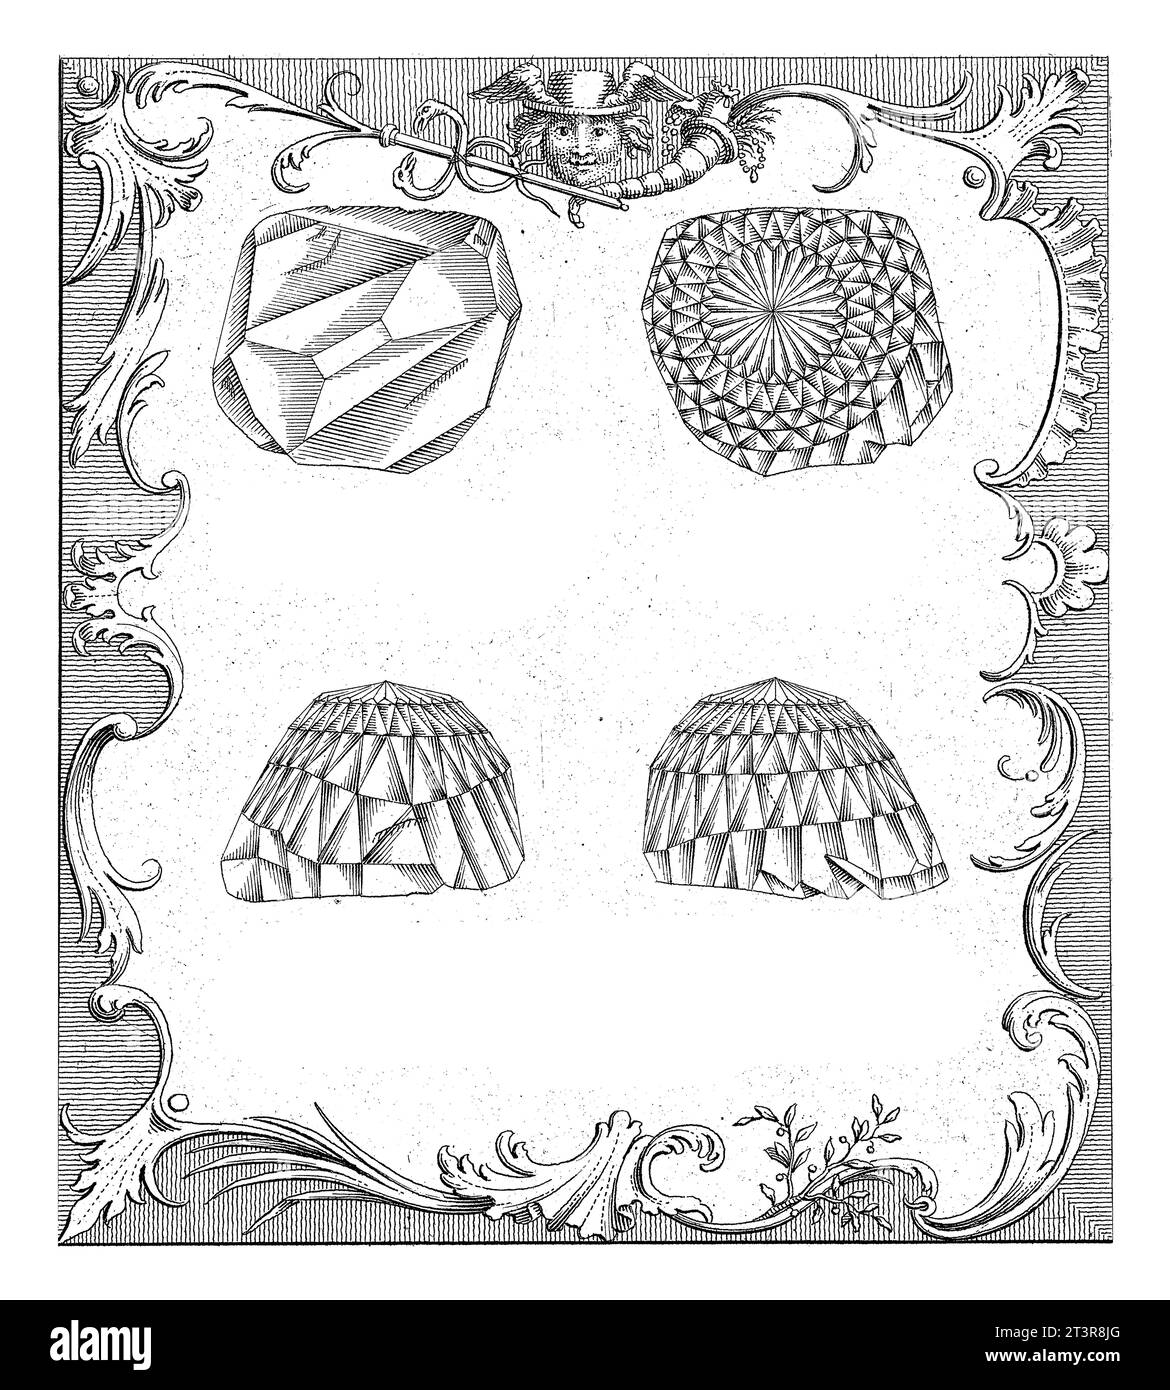 Quatre vues du diamant Orlov (Orloff)., Frans de Bakker, 1767 quatre vues du diamant Orlov (Orloff). Avec une légende descriptive en français et du Banque D'Images